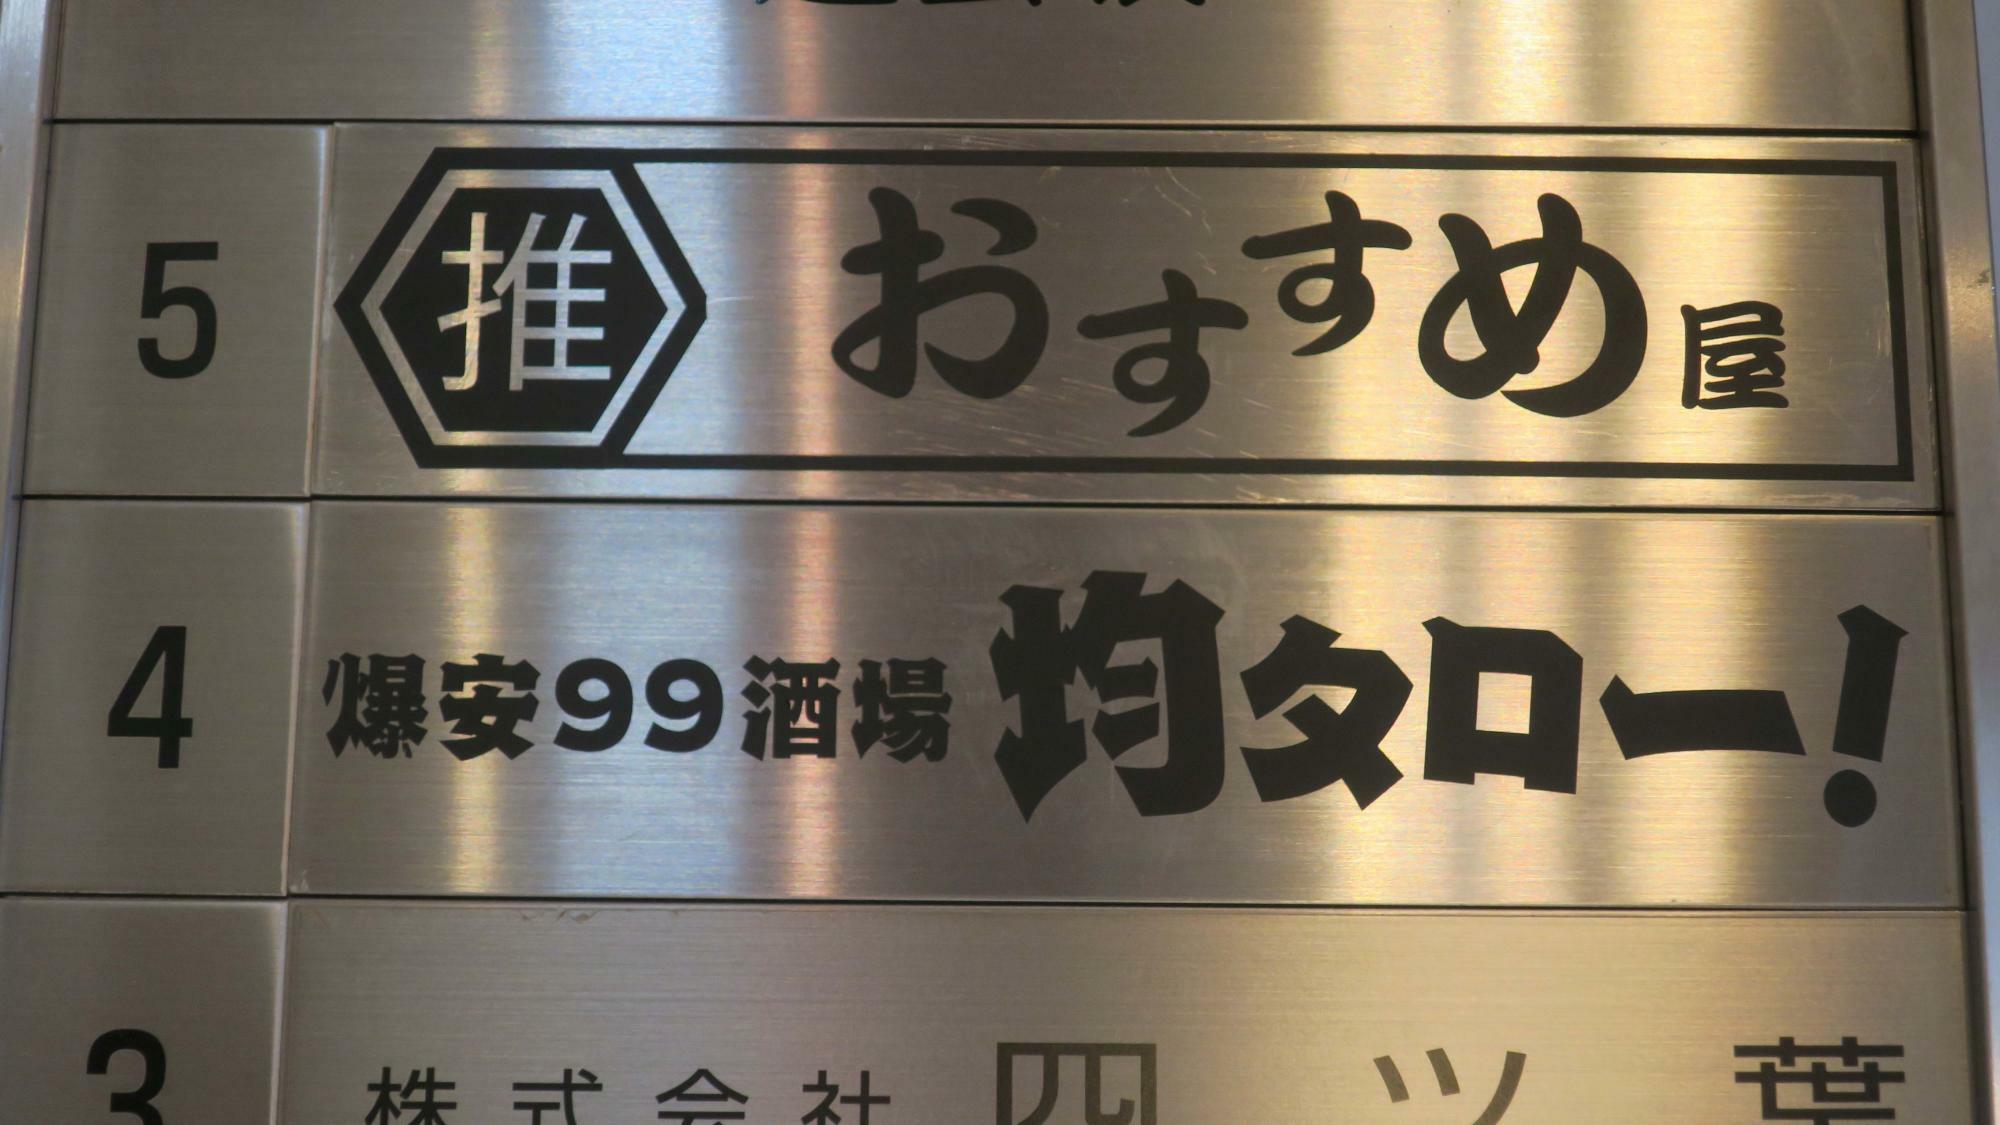 東京・渋谷「109」近くの複合ビルに低価格業態の「おすすめ屋」と「均タロー」が同時に出店した。これによって「１次会、おすすめ屋」「２次会、均タロー」という利用パターンが定着してきている（筆者撮影）